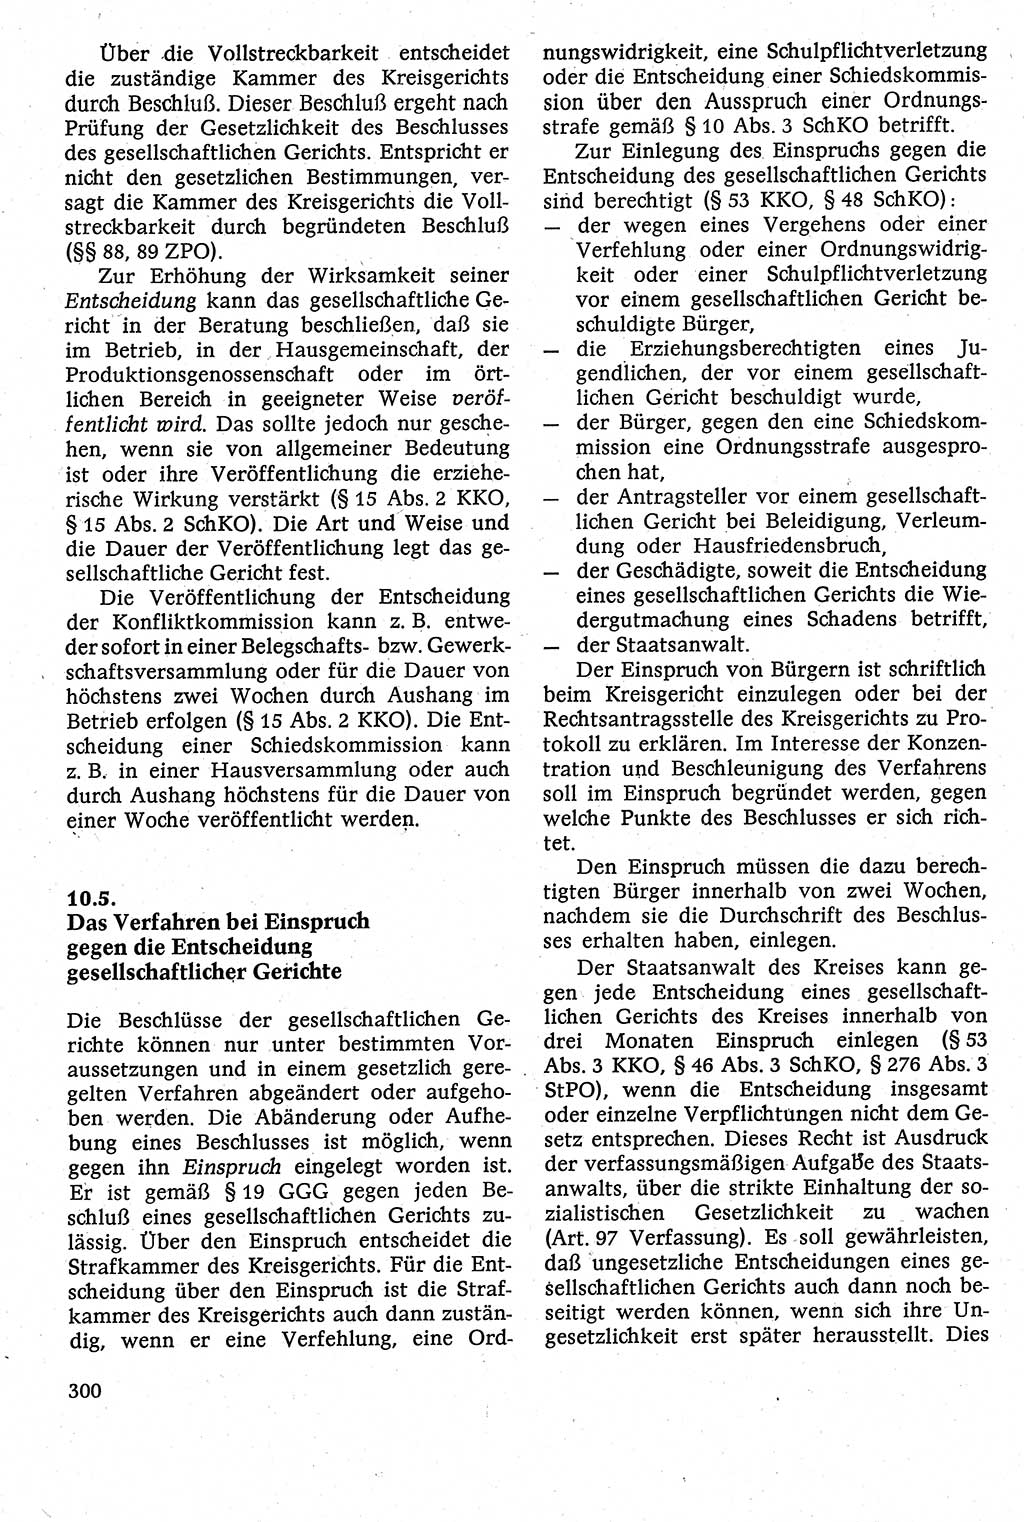 Strafverfahrensrecht [Deutsche Demokratische Republik (DDR)], Lehrbuch 1982, Seite 300 (Strafverf.-R. DDR Lb. 1982, S. 300)